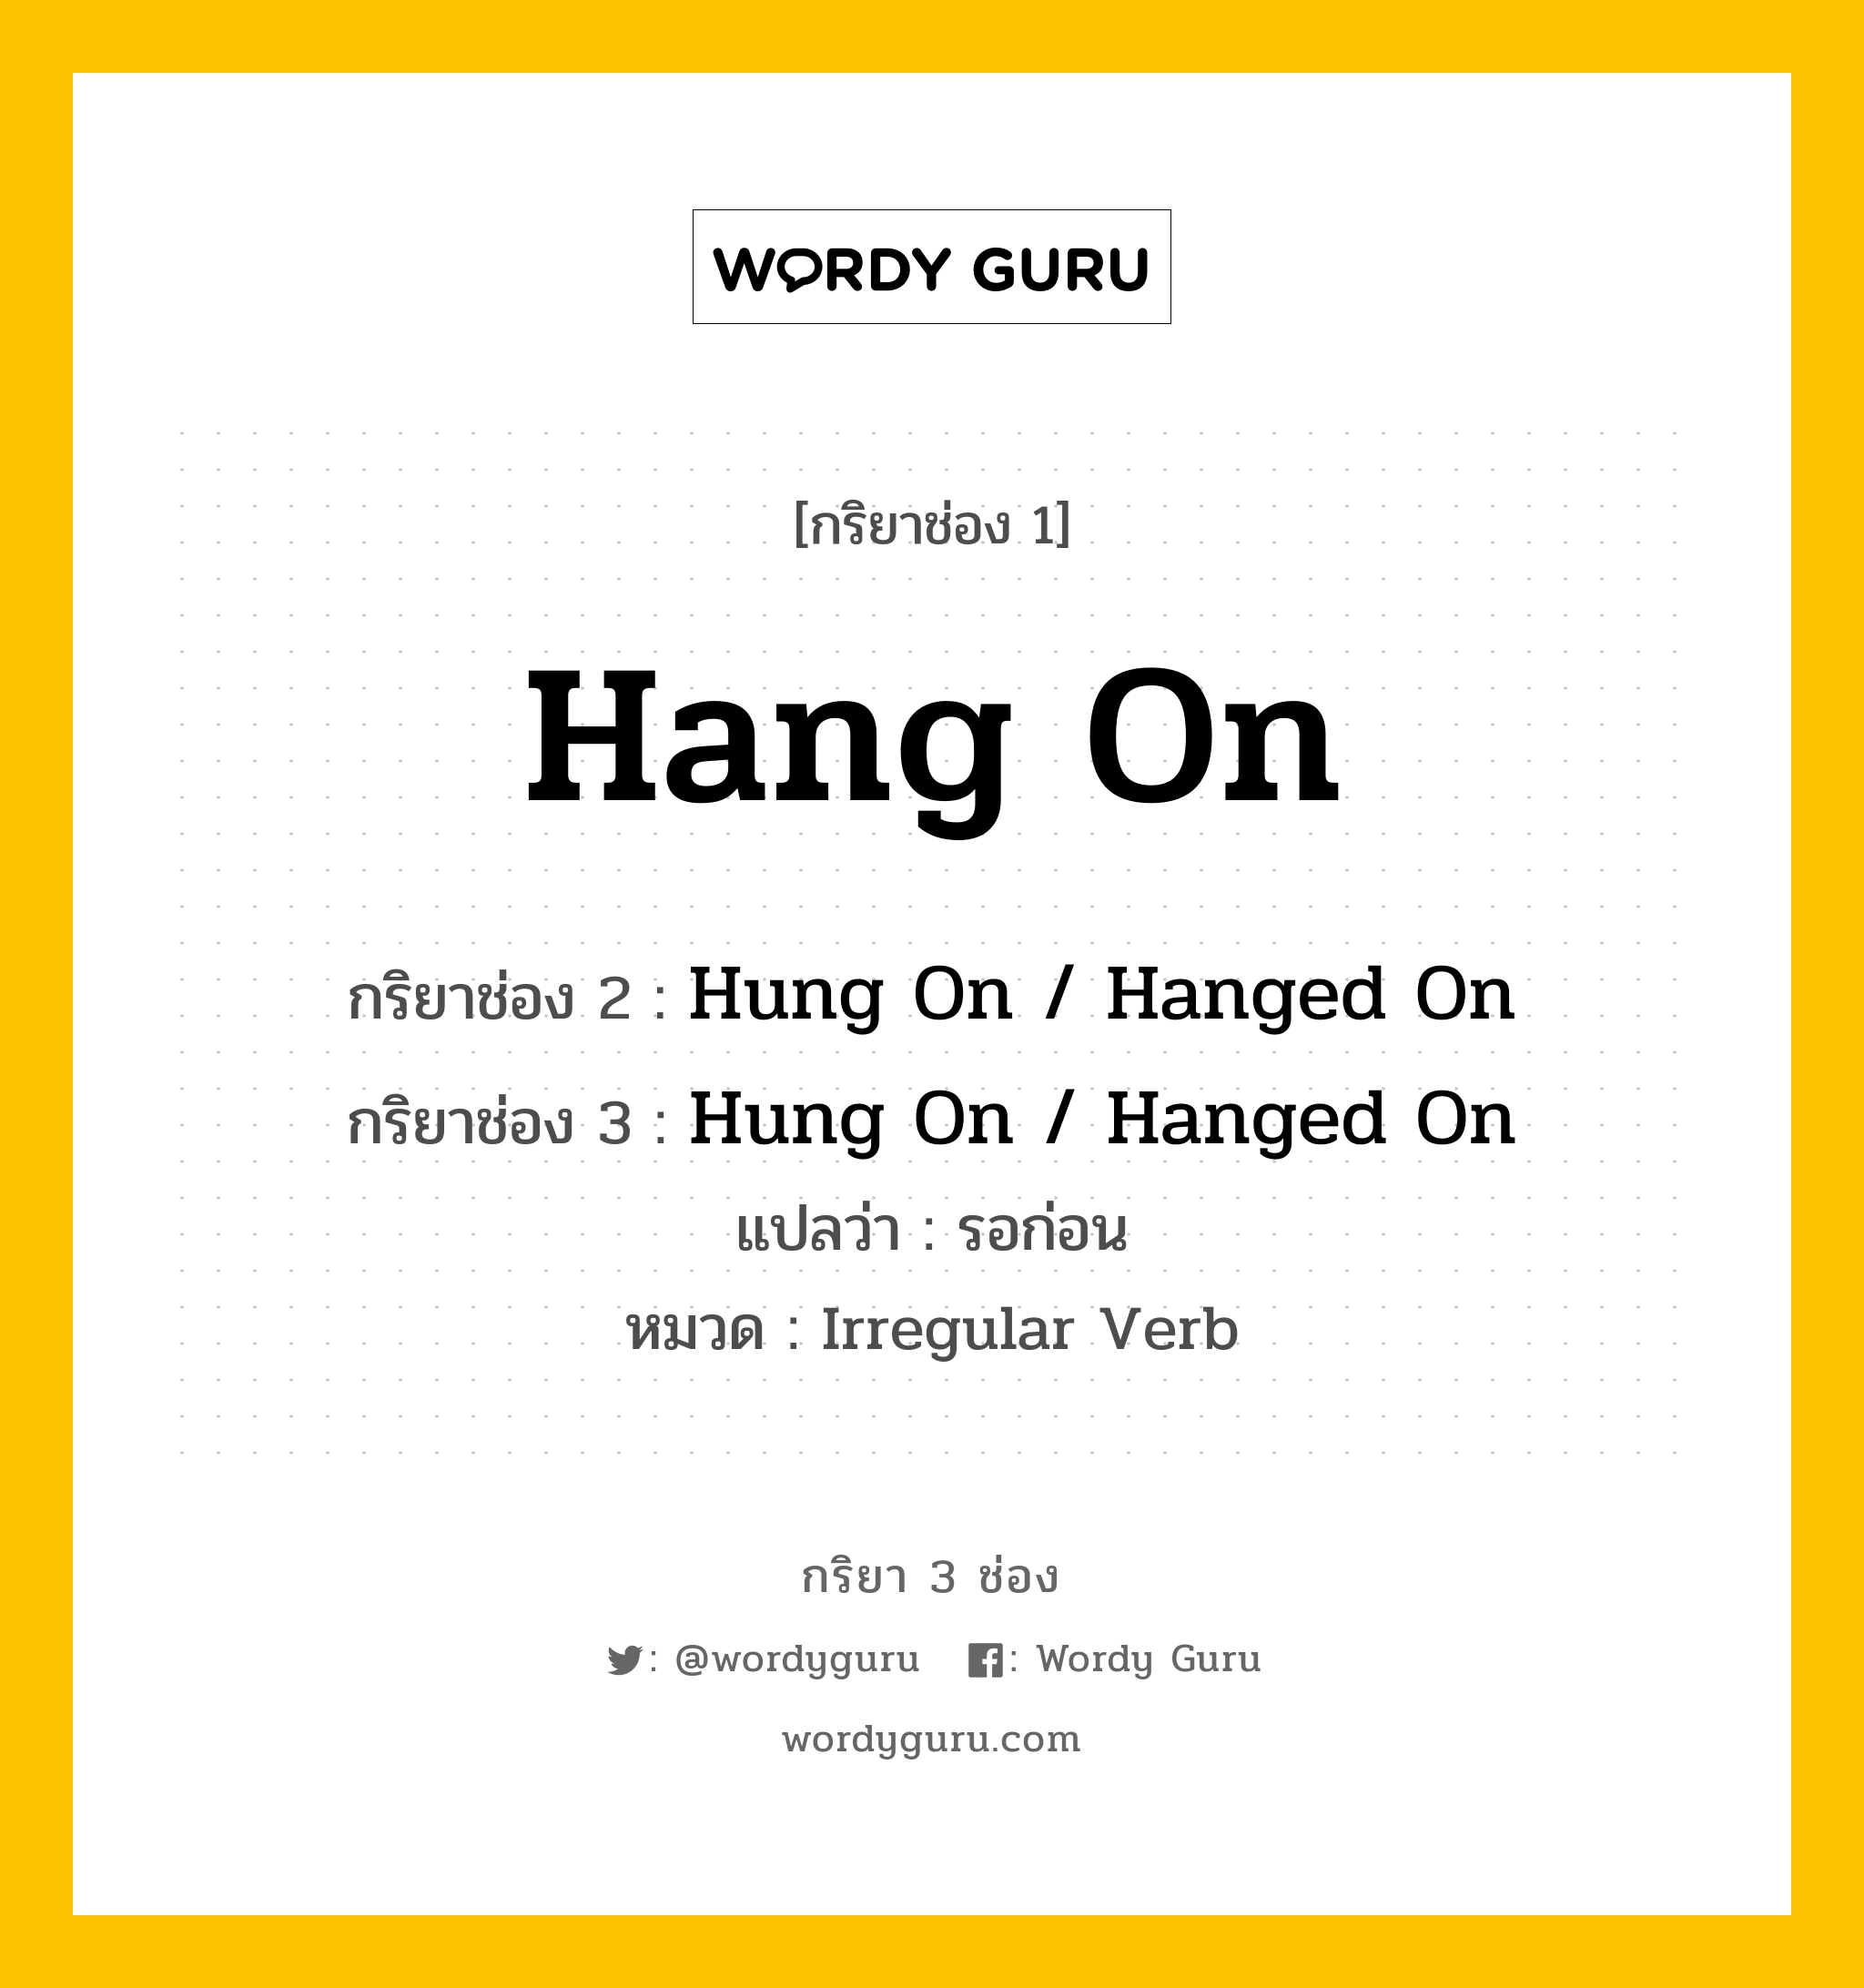 กริยา 3 ช่อง ของ Hang On คืออะไร? มาดูคำอ่าน คำแปลกันเลย, กริยาช่อง 1 Hang On กริยาช่อง 2 Hung On / Hanged On กริยาช่อง 3 Hung On / Hanged On แปลว่า รอก่อน หมวด Irregular Verb หมวด Irregular Verb